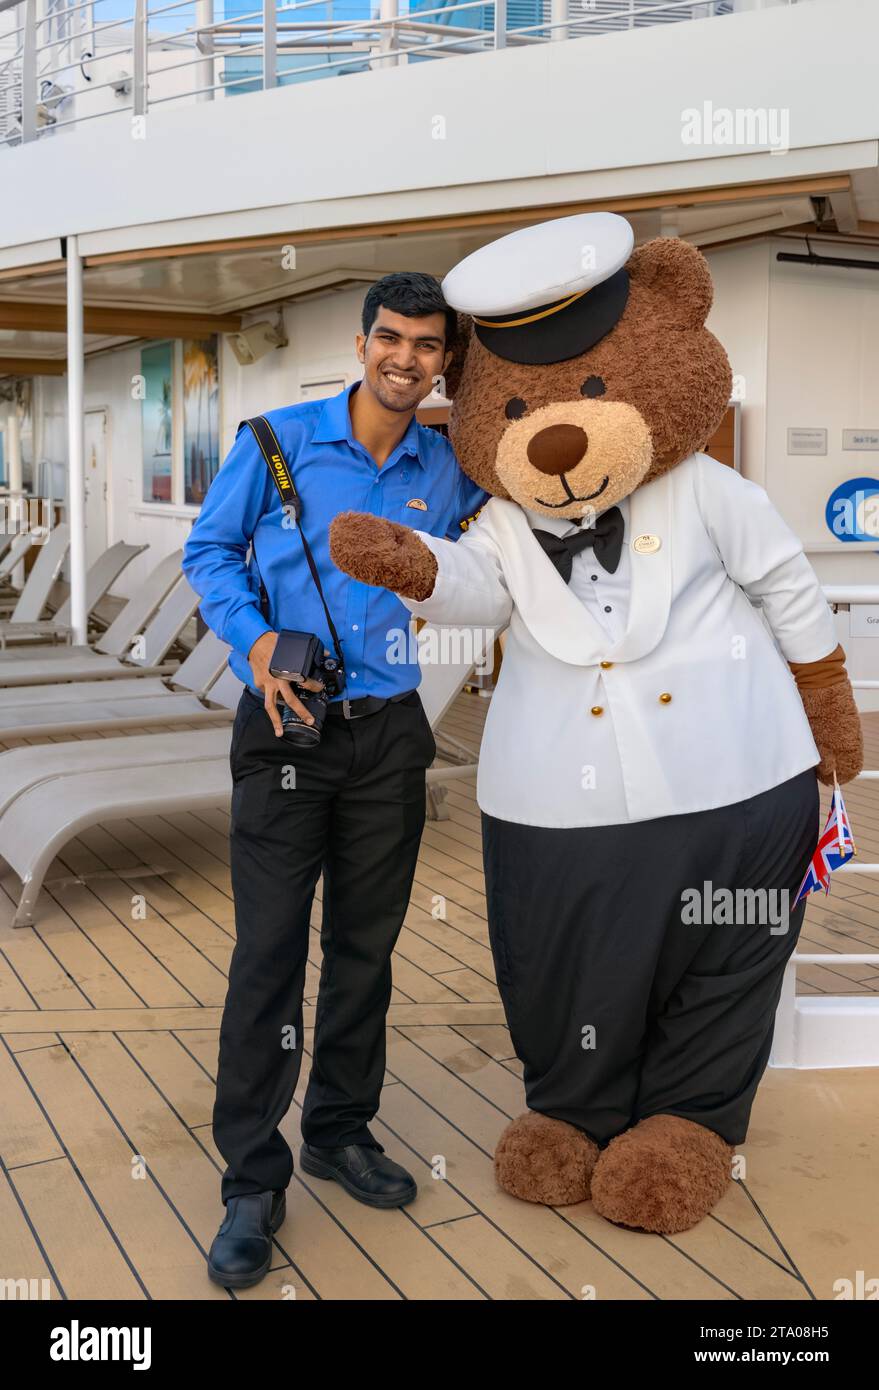 Stanley The Bear Mascot avec le photographe de navires sur le navire Sky Princess Cruise, il apparaît également sur d'autres navires de la flotte de navires Princess Cruise Banque D'Images